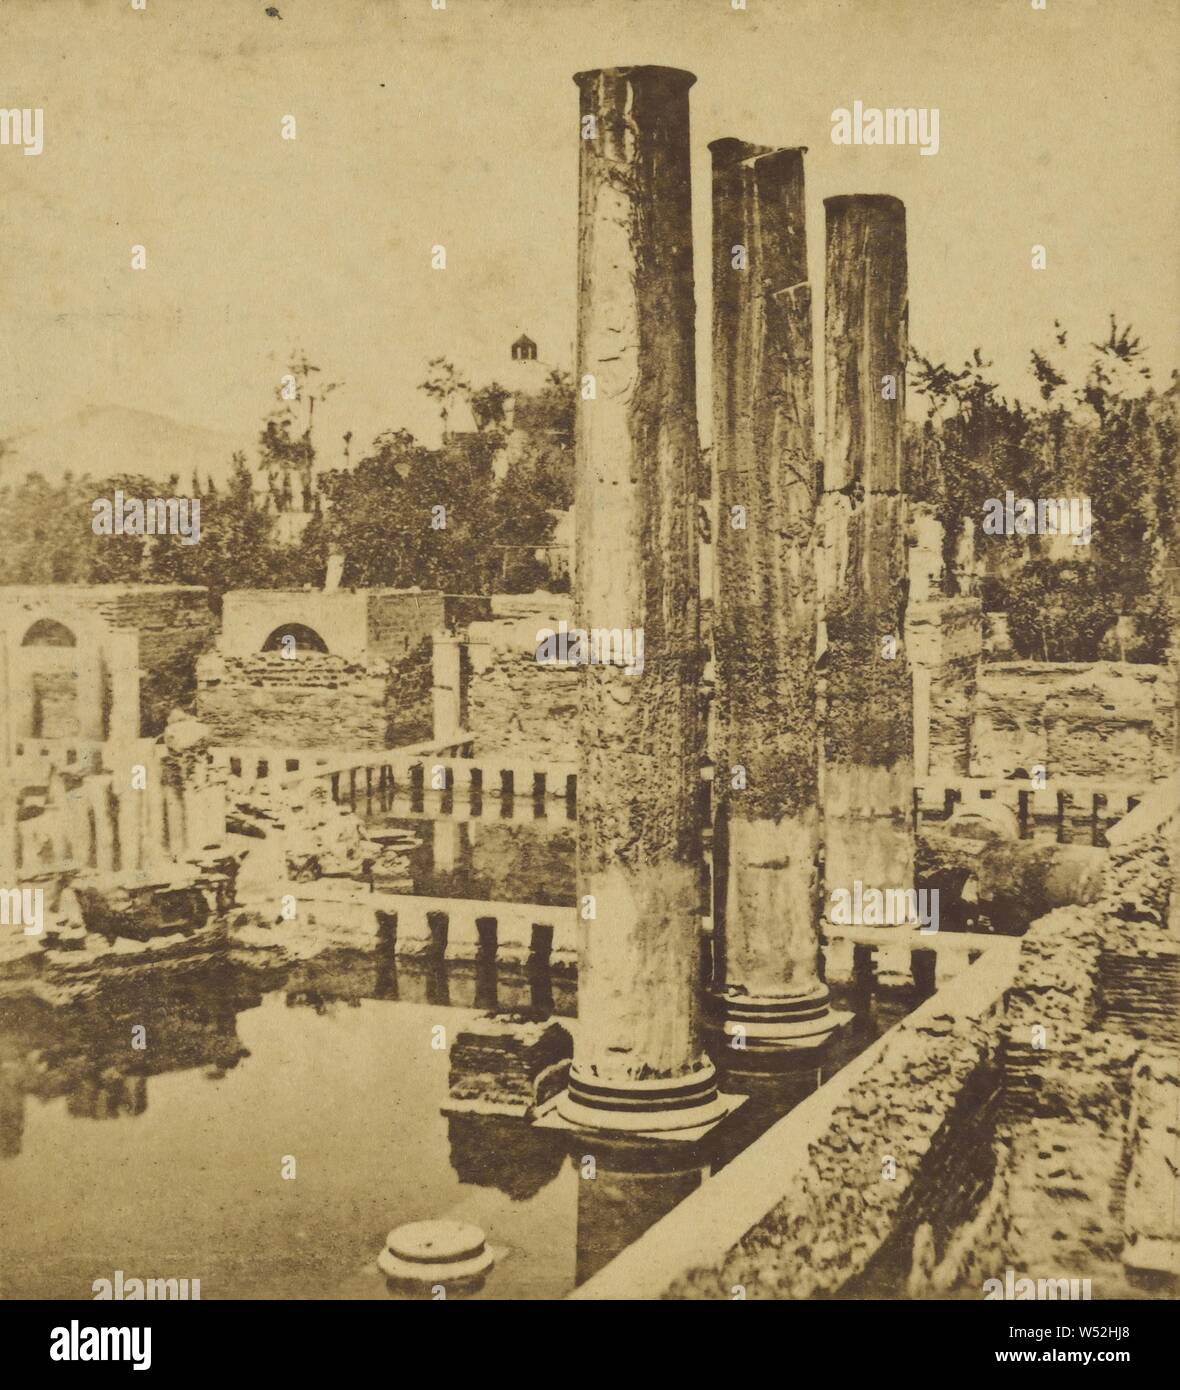 Drei verbleibenden Spalten innerhalb der Ruinen, Unbekannt, ungefähr 1860, Eiweiß silber Drucken Stockfoto